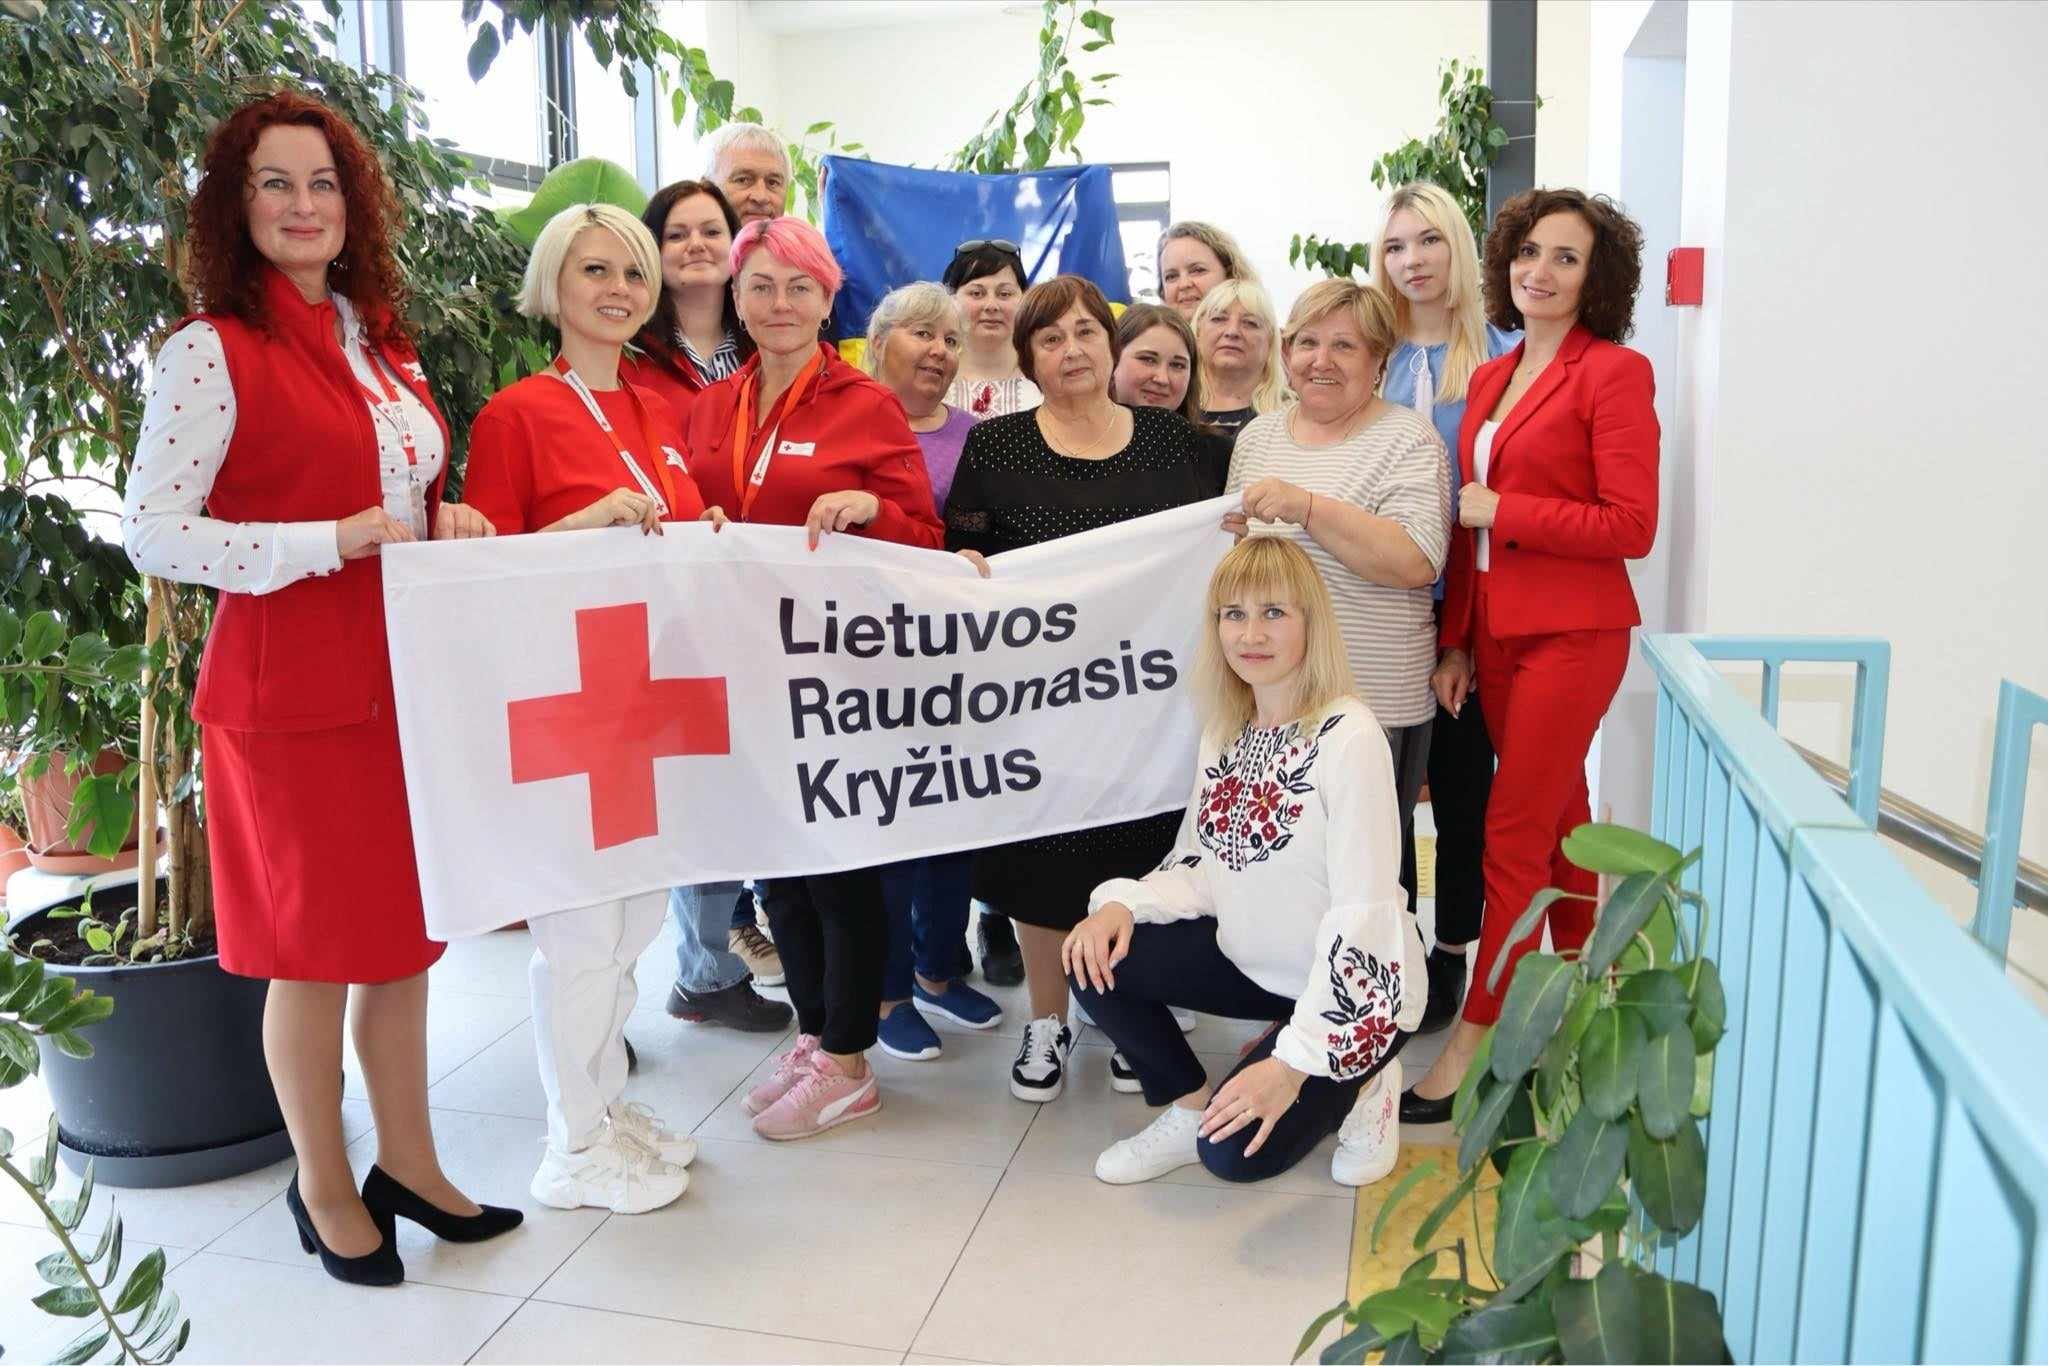 Lietuvos Raudonasis Kryžius 105 metų gimtadienio ir Tarptautinės Raudonojo Kryžiaus dienos proga atvyko į Kupiškio Ukrainos centrą